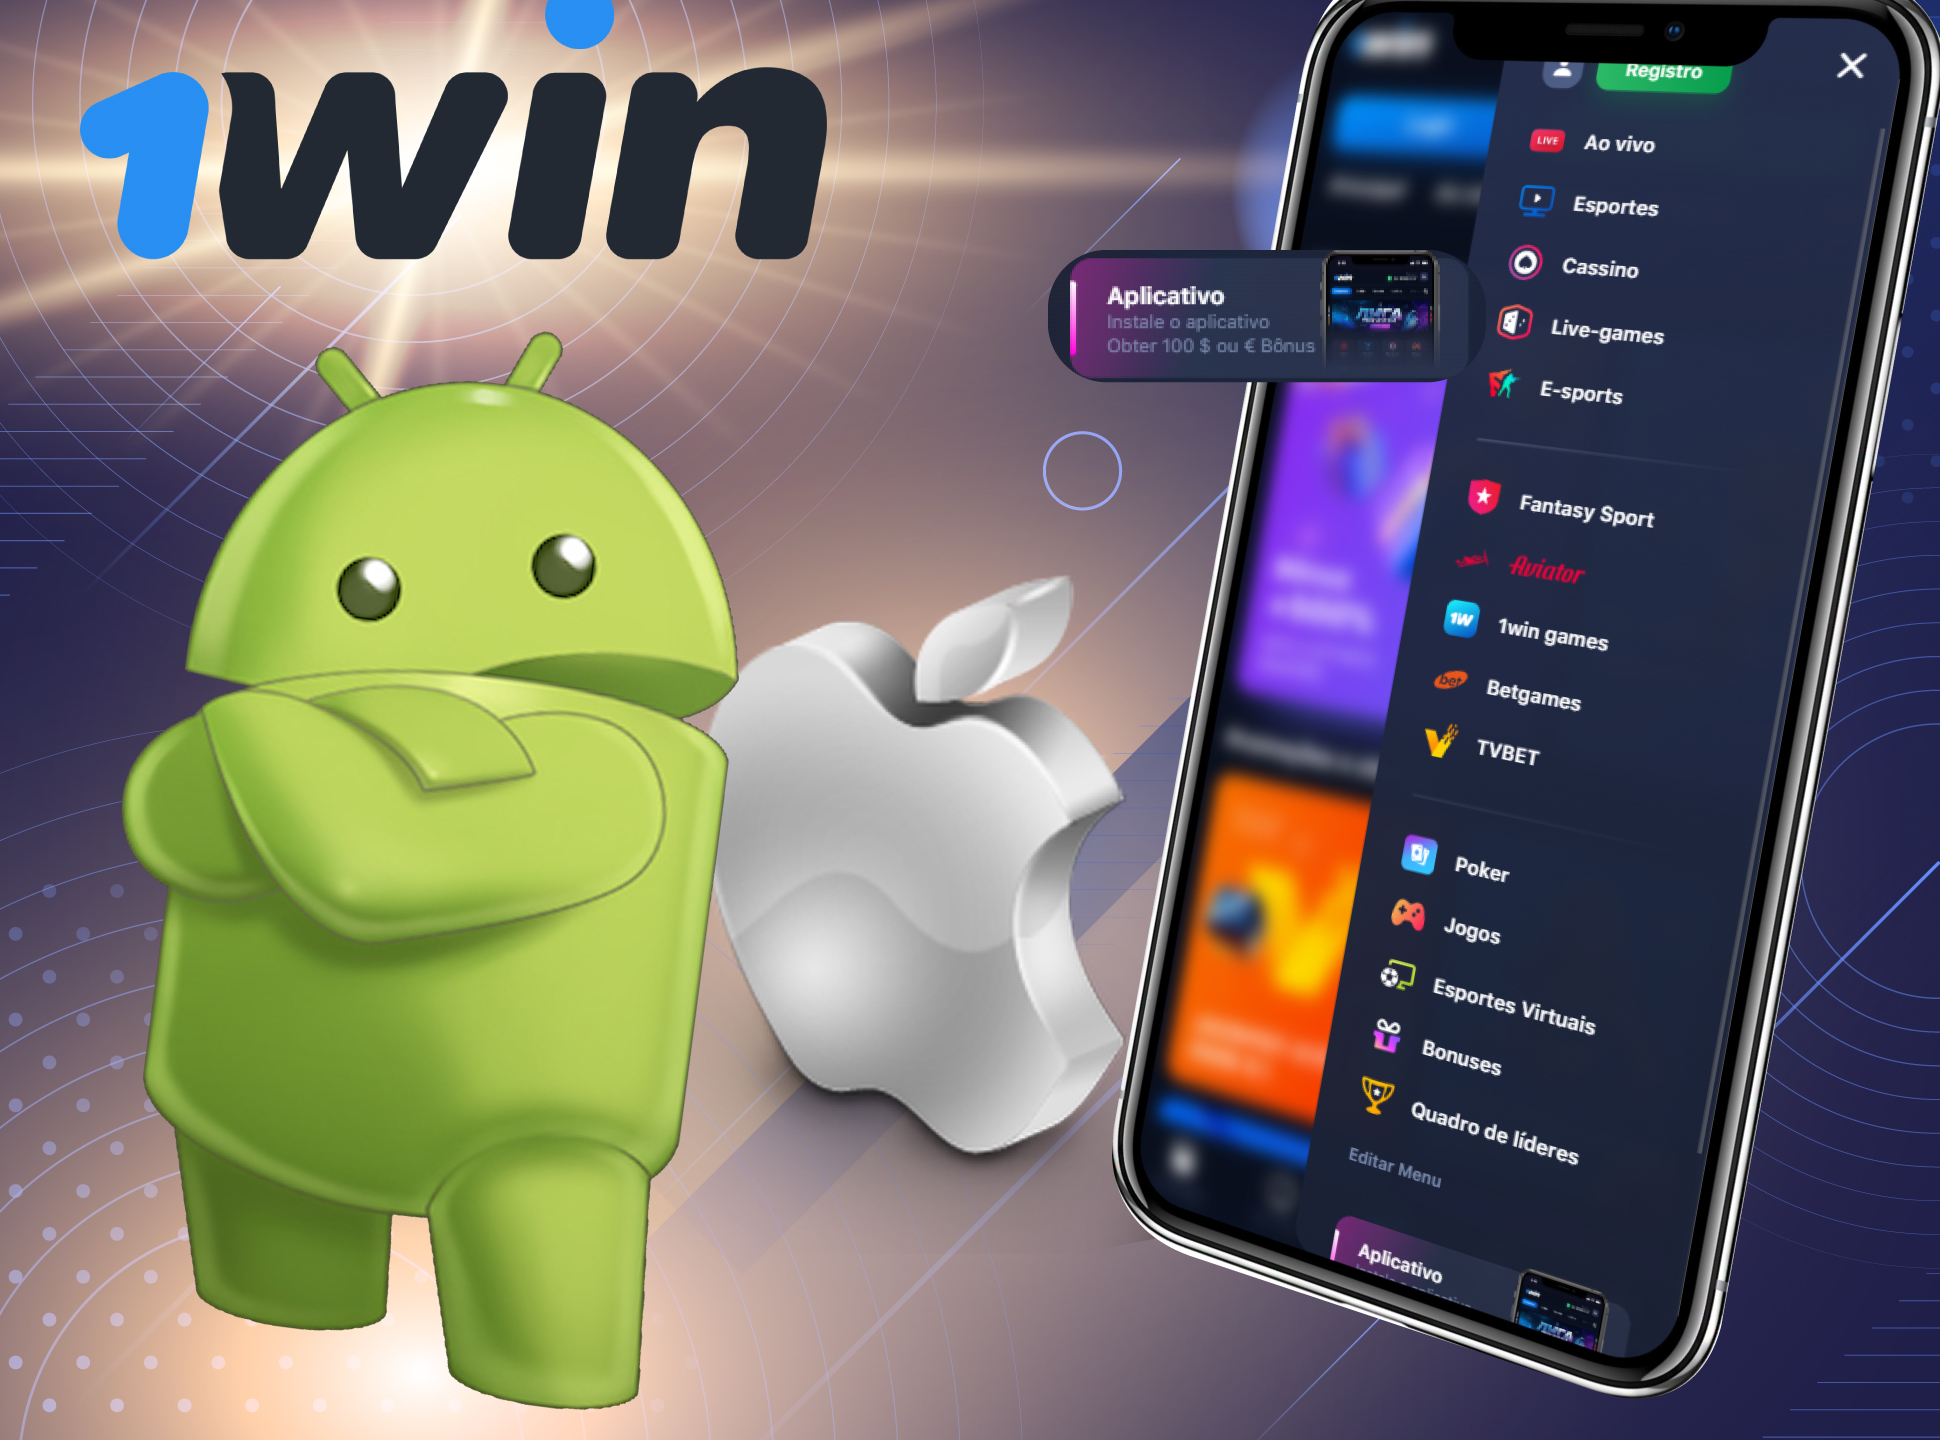 1win tem um aplicativo móvel útil para que você possa apostar a qualquer momento.